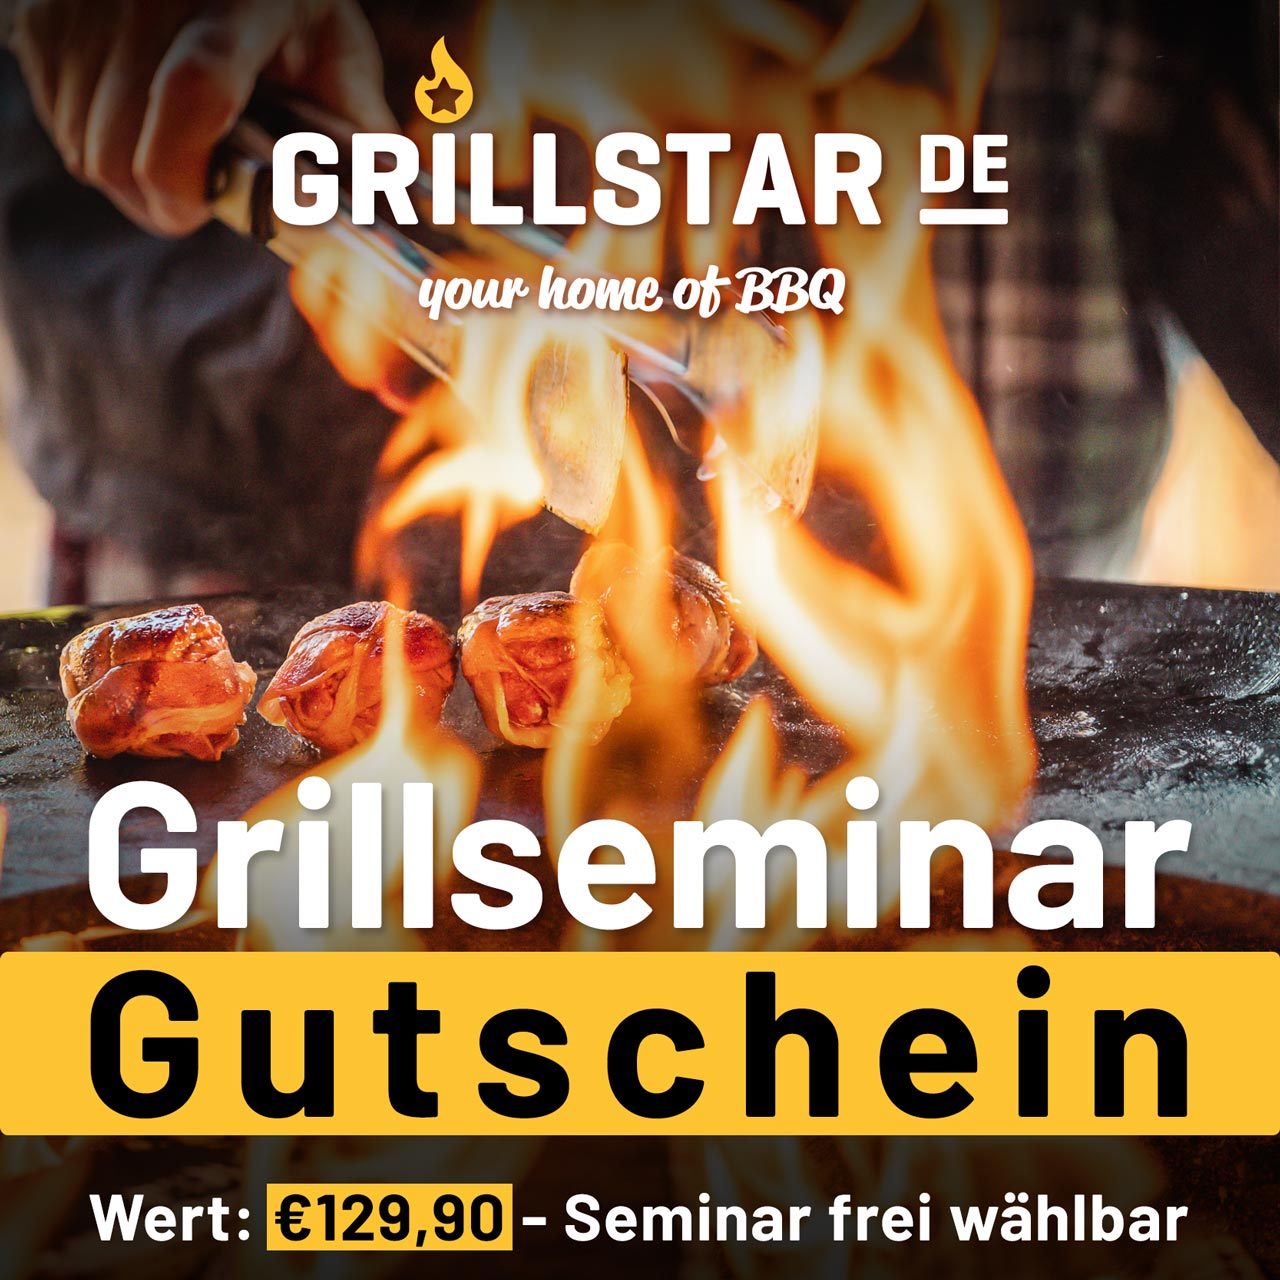 Grillseminar - Gutschein €129,90